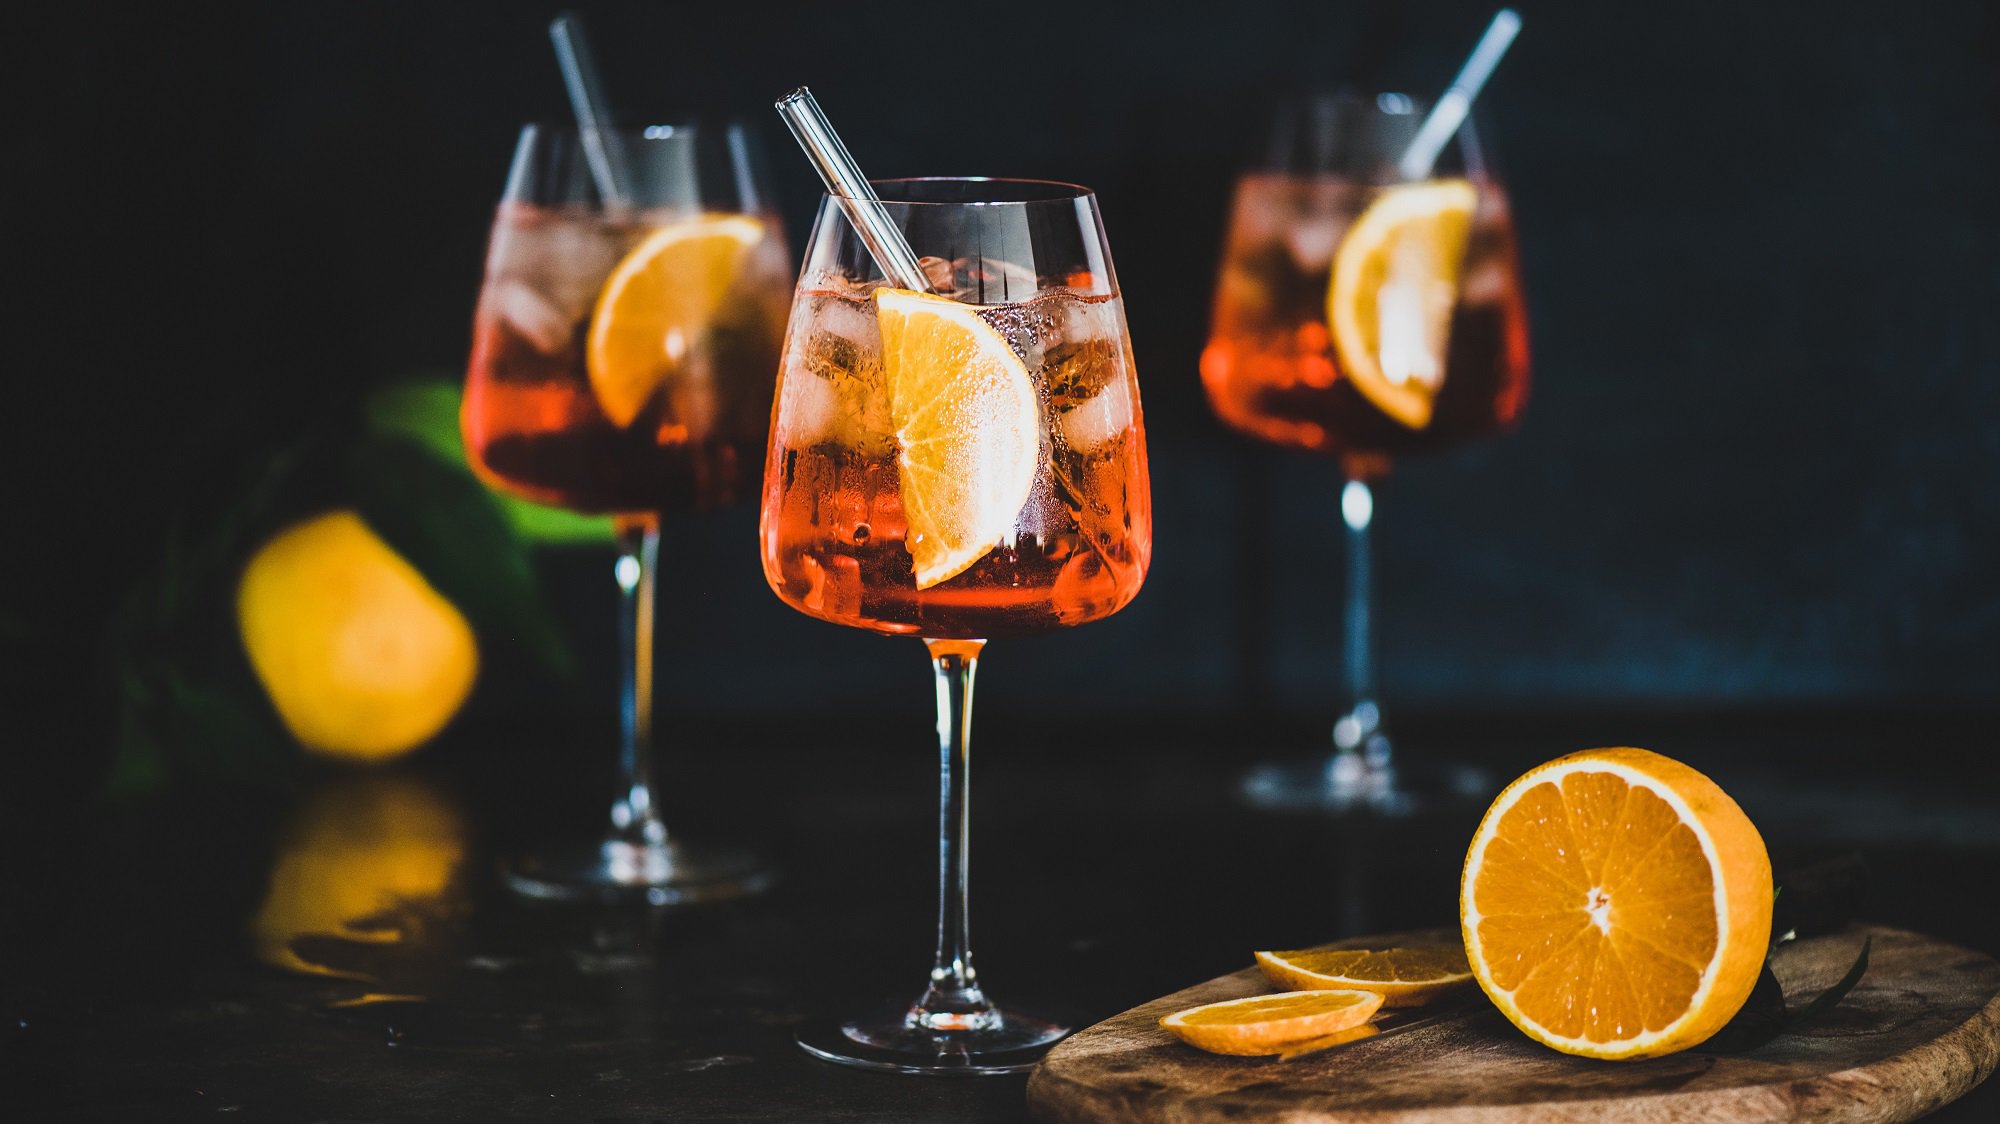 Drei Gläser alokoholfreier Aperol Spritz mit je einem Strohhalm und einer Orangenscheibe darin, daneben eine angeschnittene Orange.